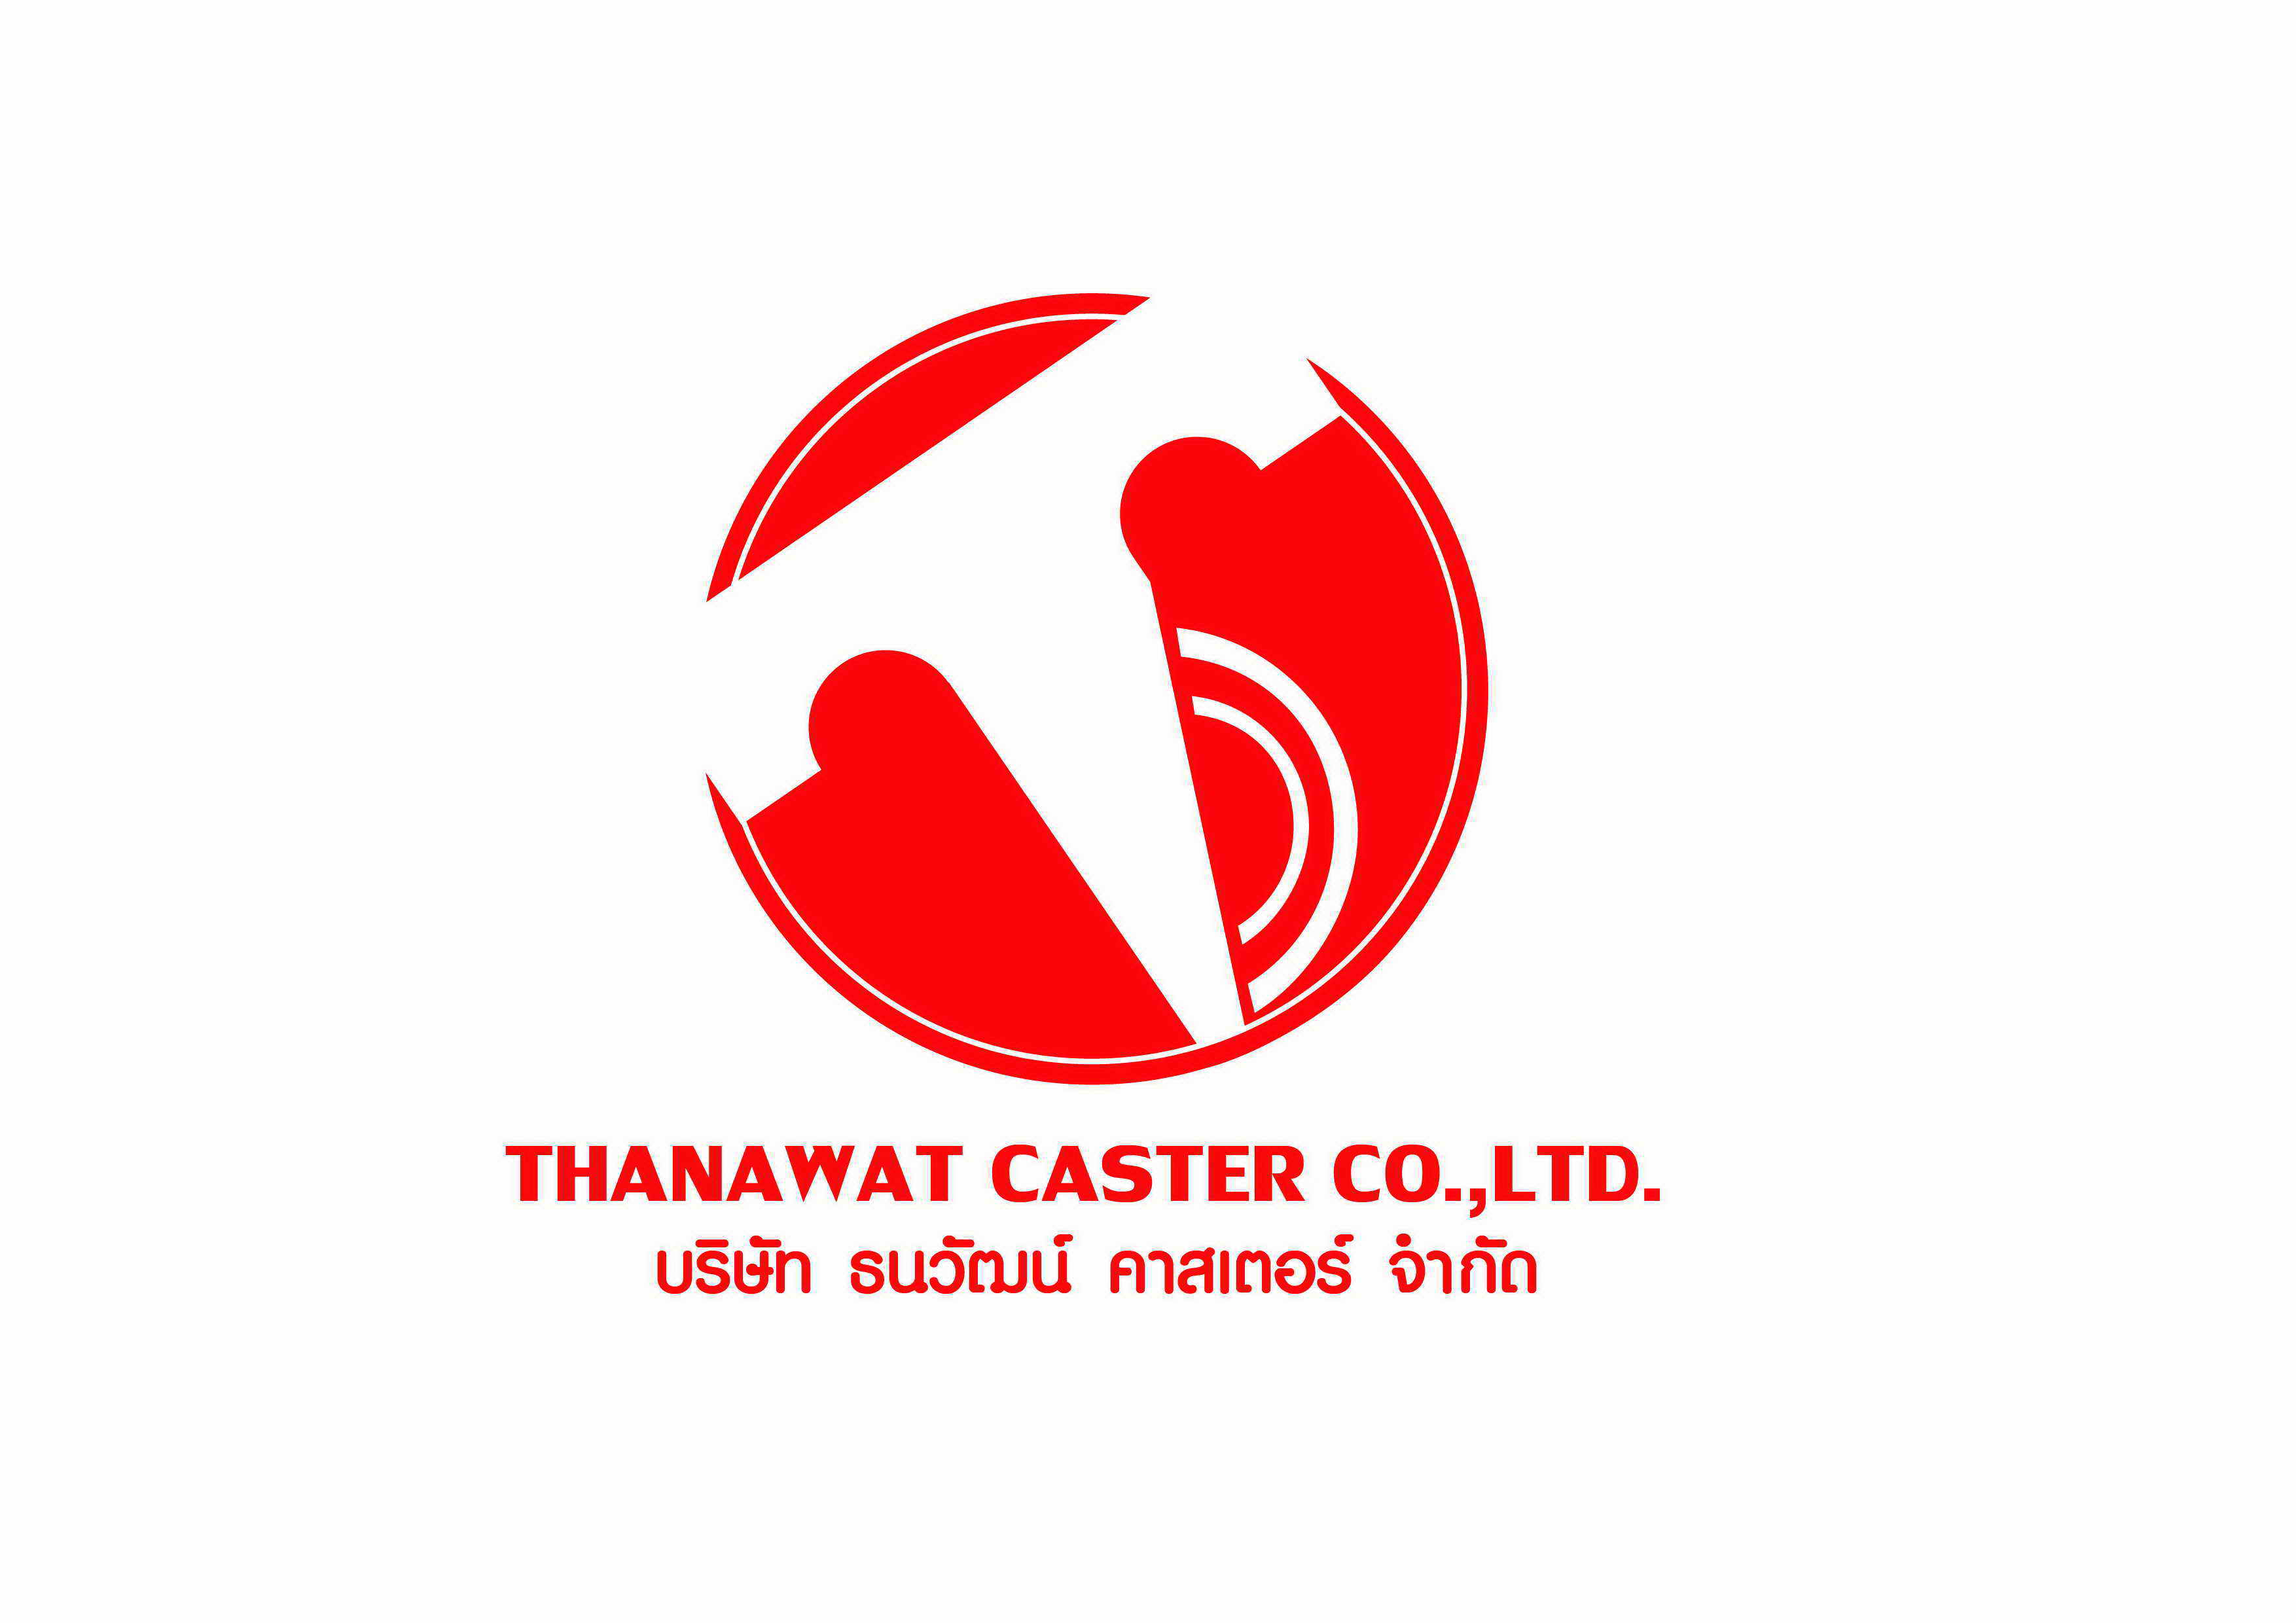 Thanawat Caster Co.,Ltd., บริษัท ธนวัฒน์ คาสเตอร์ จำกัด